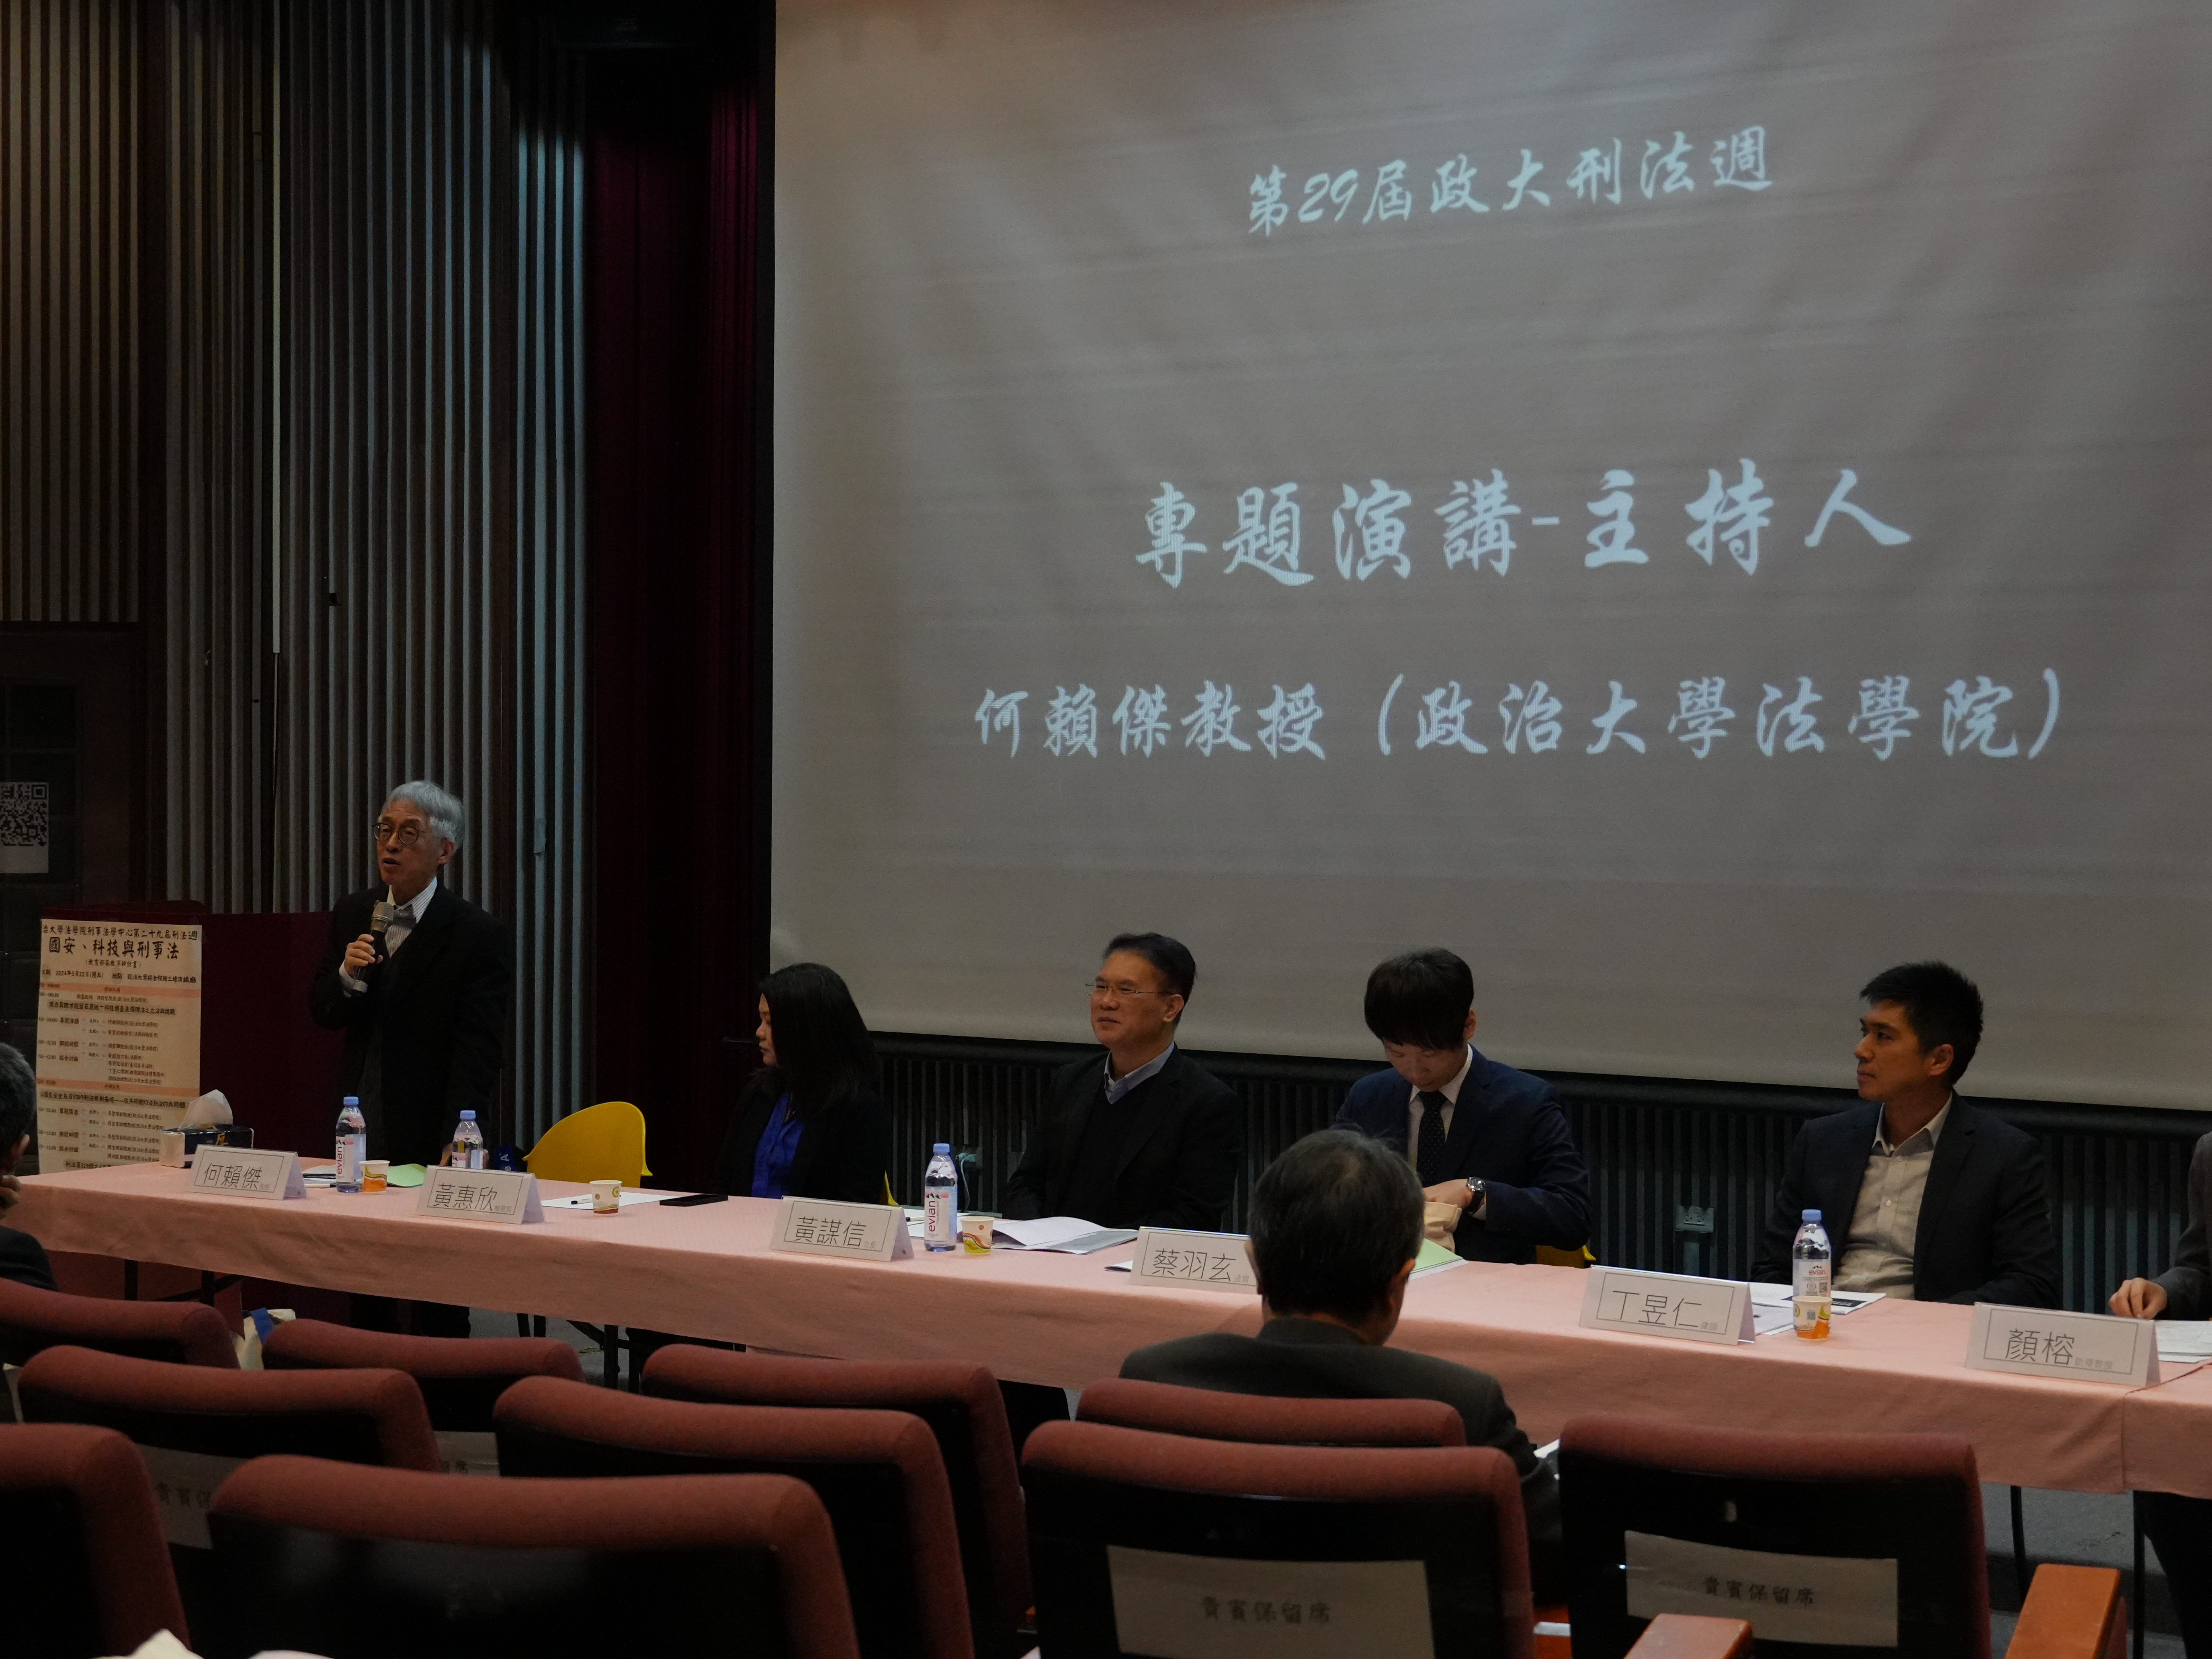 第一場次演講，主持人為何賴傑教授，由左至右為：何賴傑教授、黃惠欣檢察官、黃謀信次長、蔡羽玄法官、丁昱仁律師。